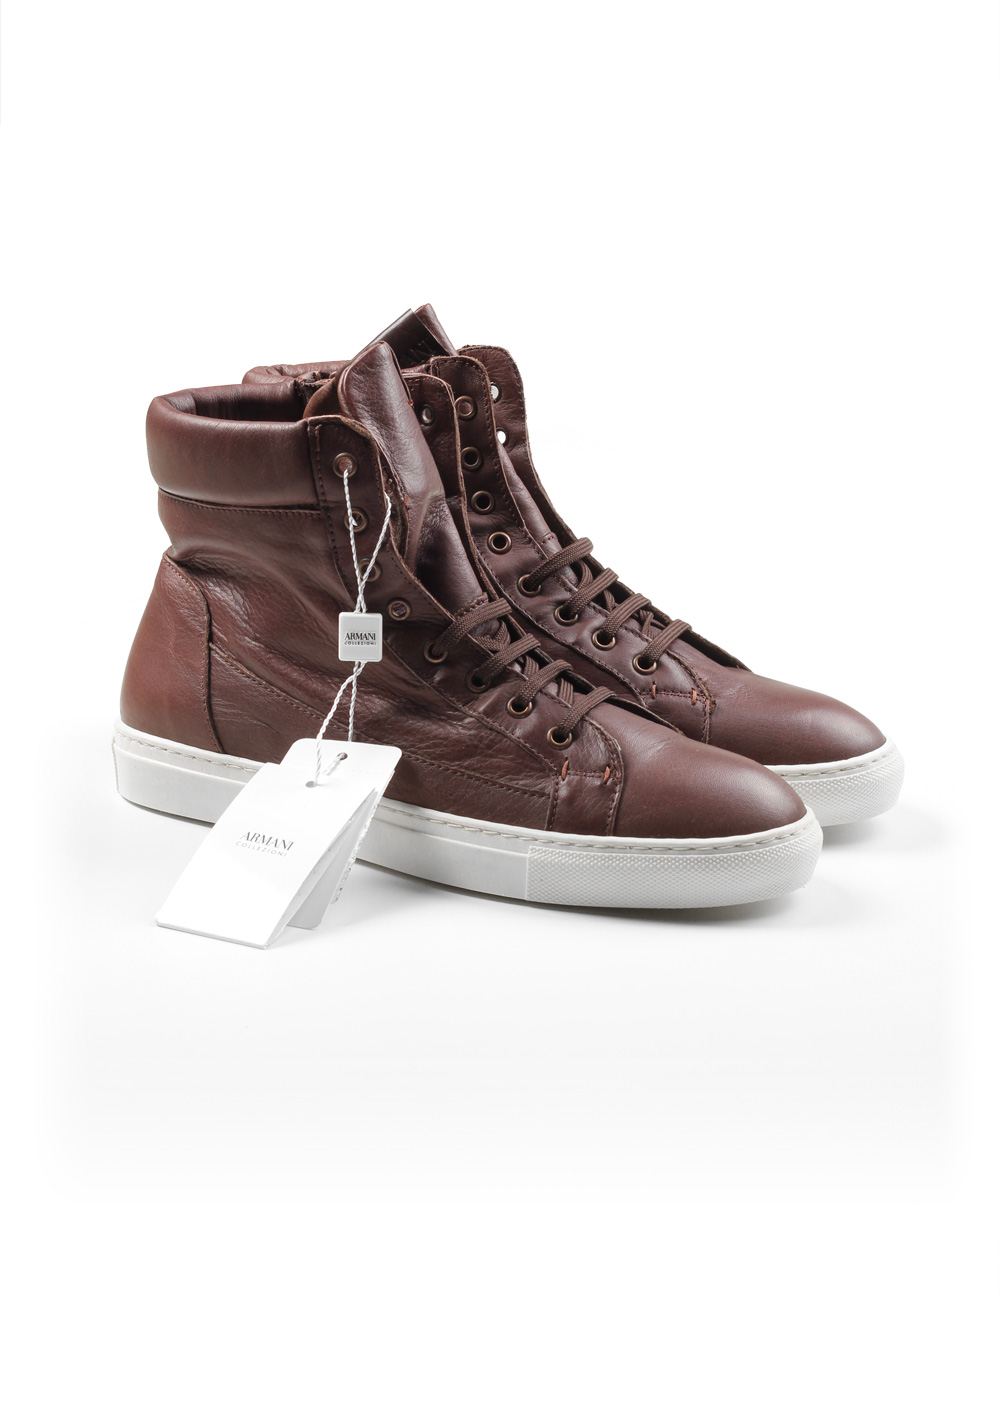 Armani Collezioni Hightop Sneaker Size 42 Eur / 8 U.S. / 7.5 Uk Brown Shoes | Costume Limité